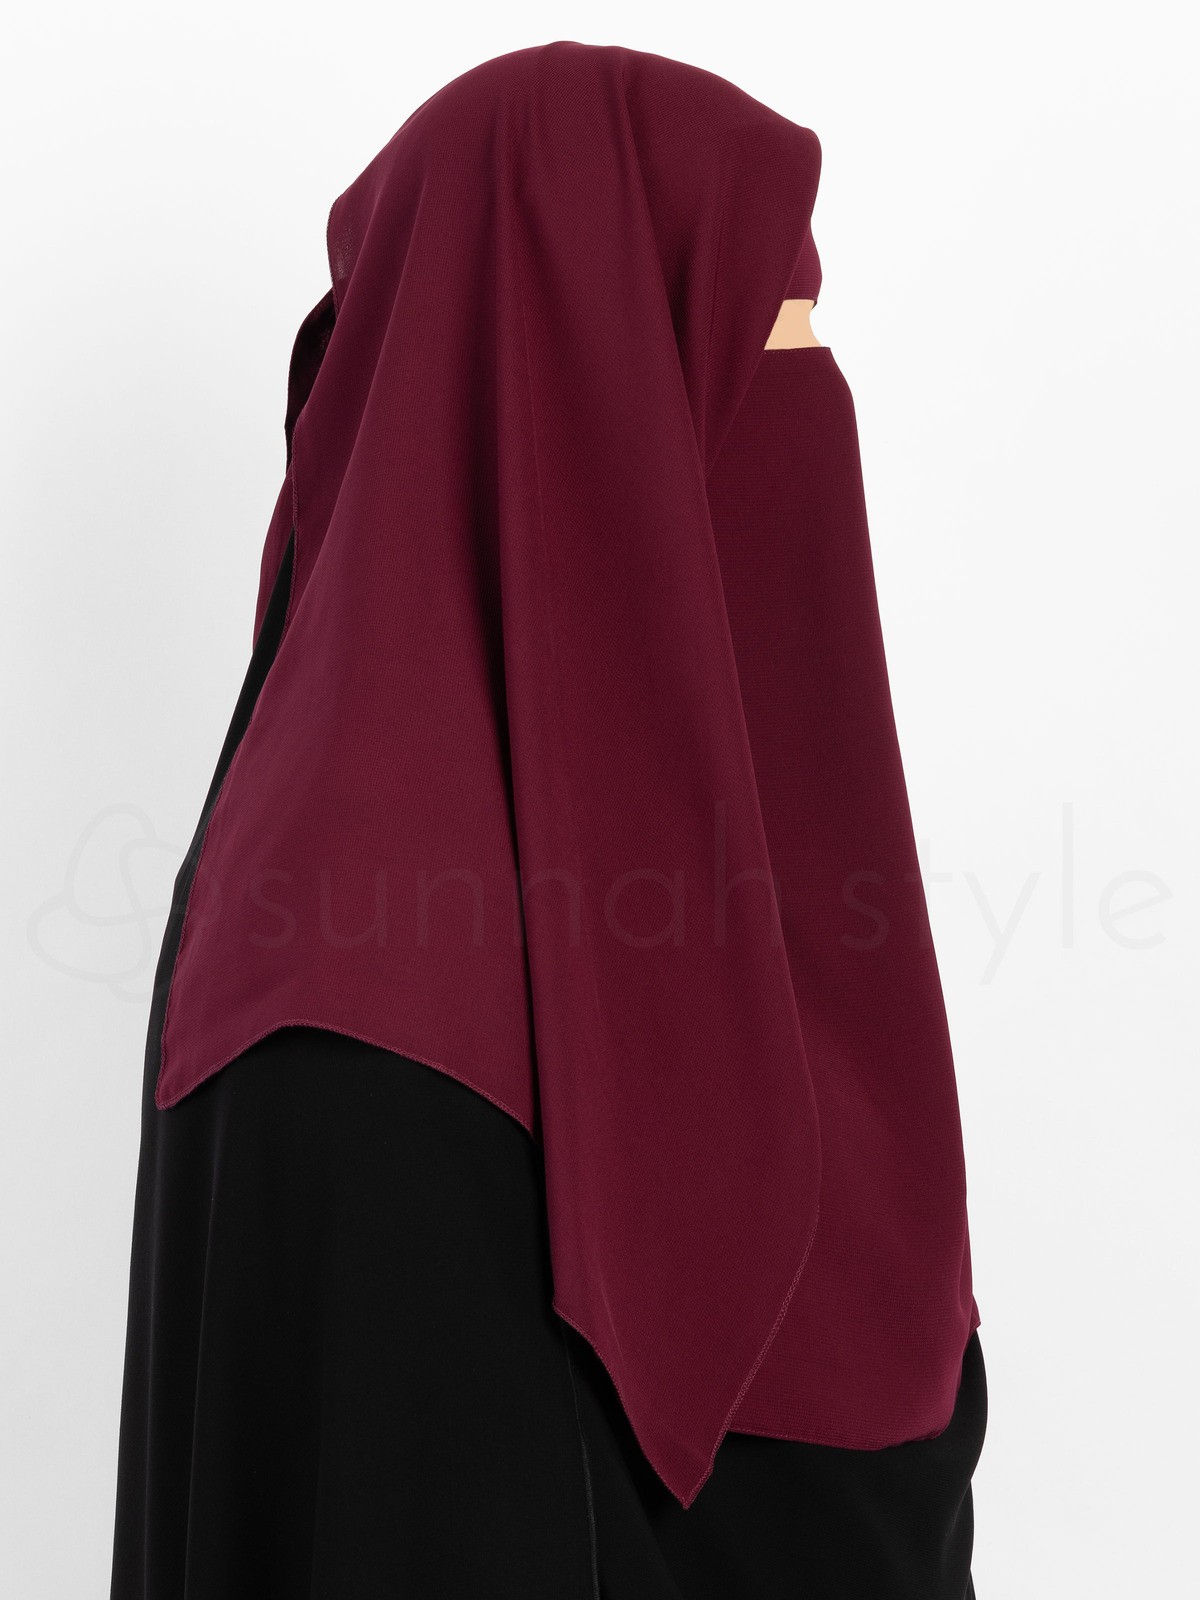 Sunnah Style - Narrow No-Pinch Two Layer Niqab (Black)